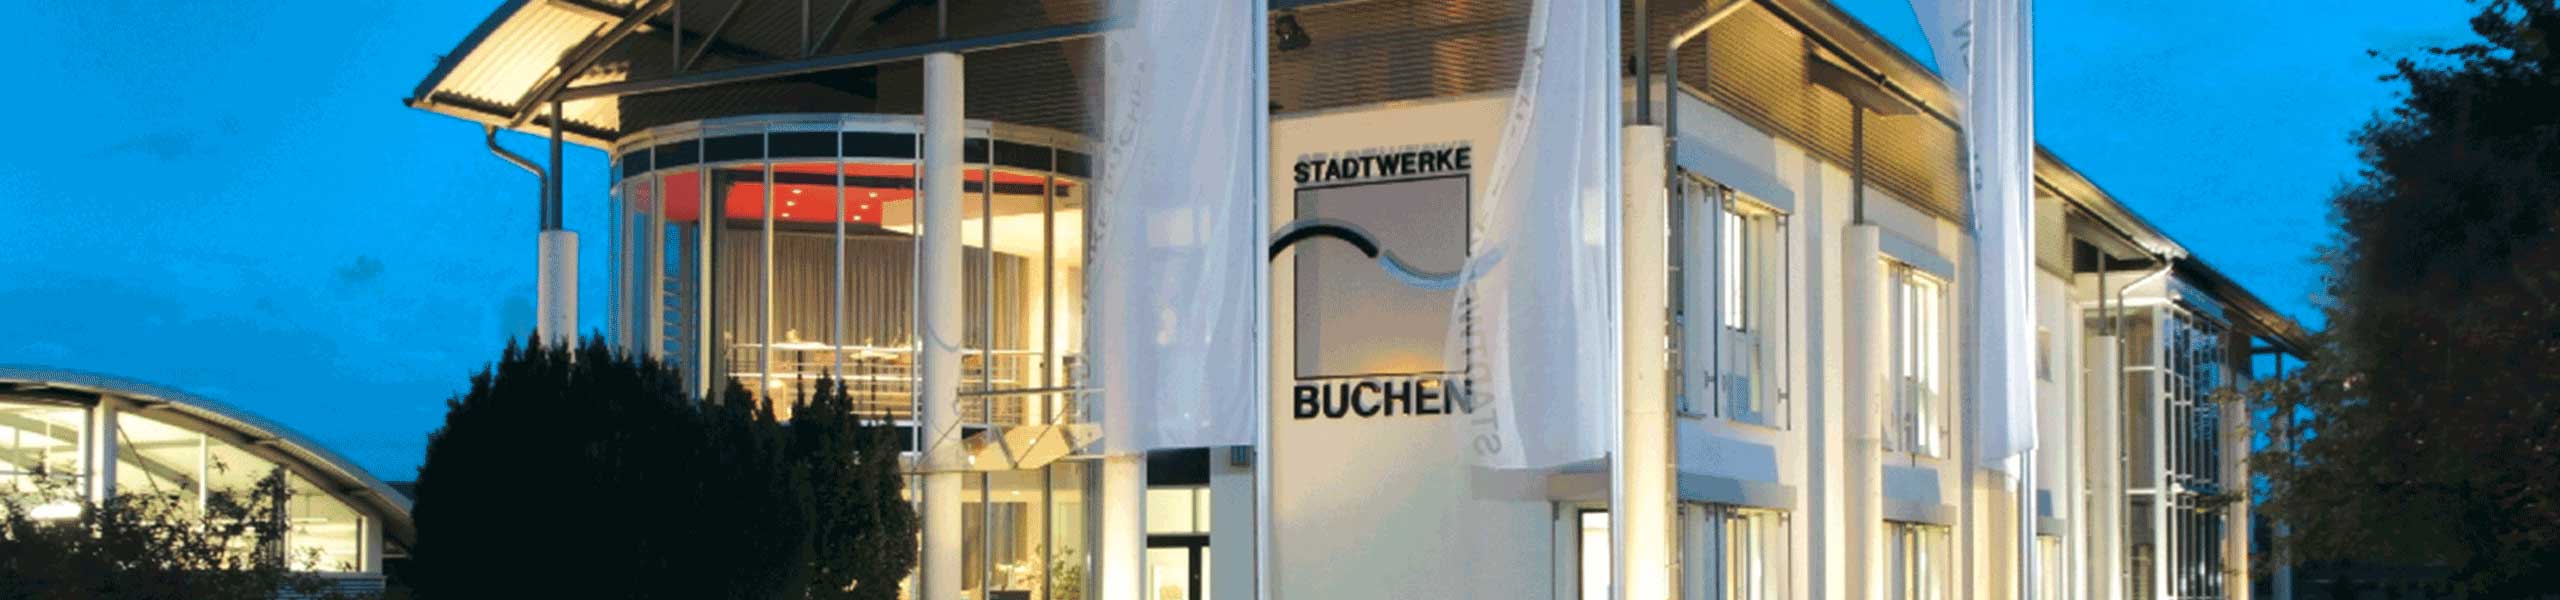 Stadtwerke Buchen GmbH & Co KG - Stadtwerke Buchen informieren zum Weltwassertag 2024: Klimawandel erfordert verstärkten Schutz unserer Trinkwasserressourcen